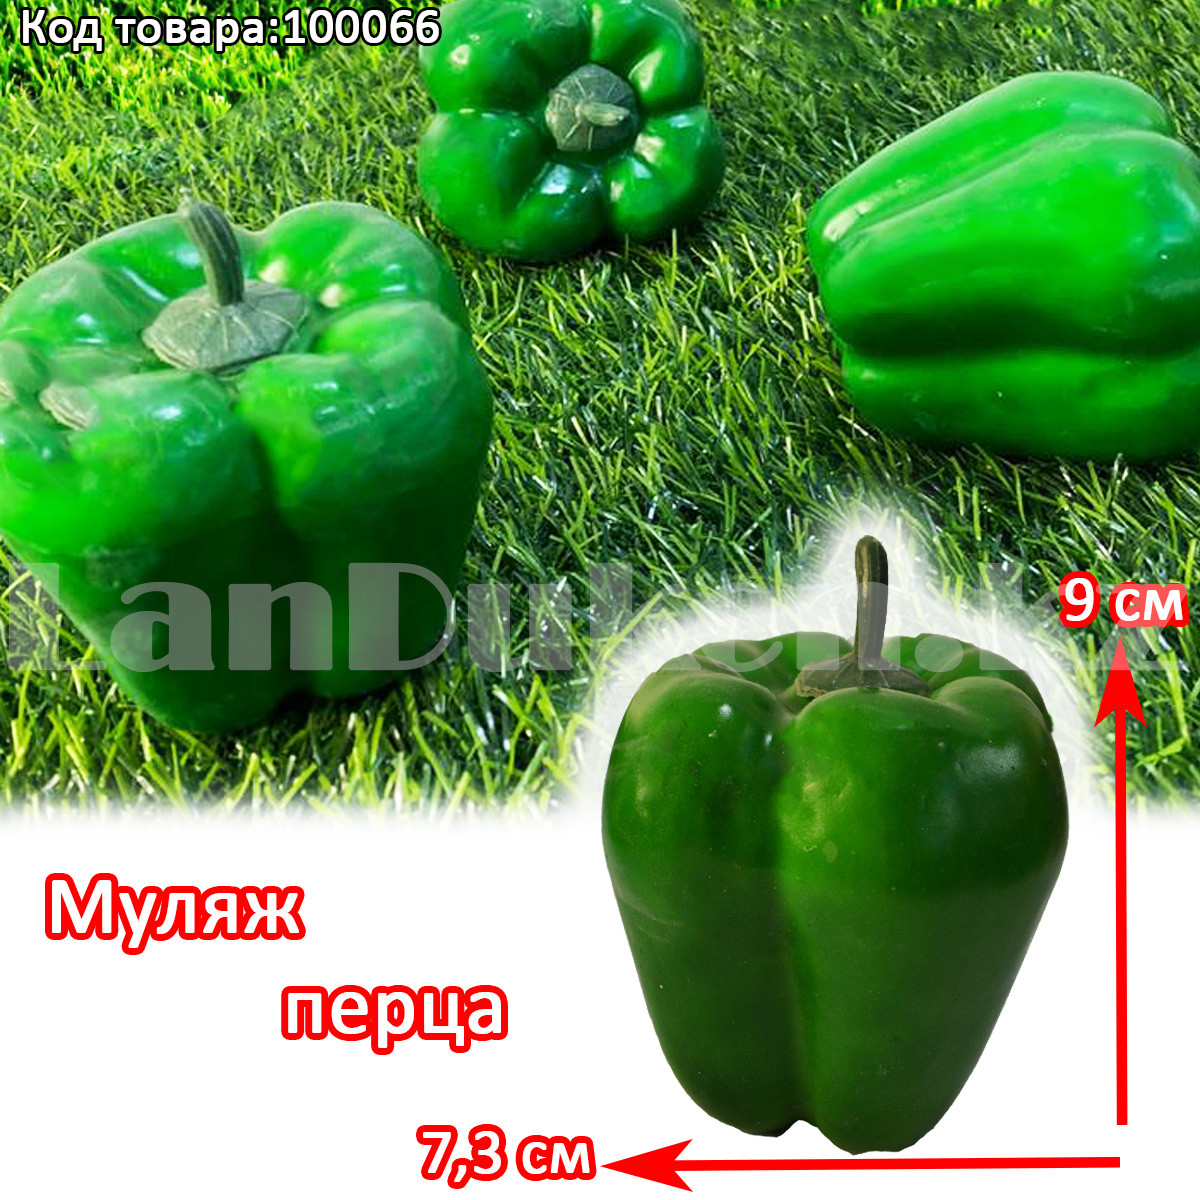 Искусственный болгарский перец декоративный муляж маленький зеленый 9х7,3 см